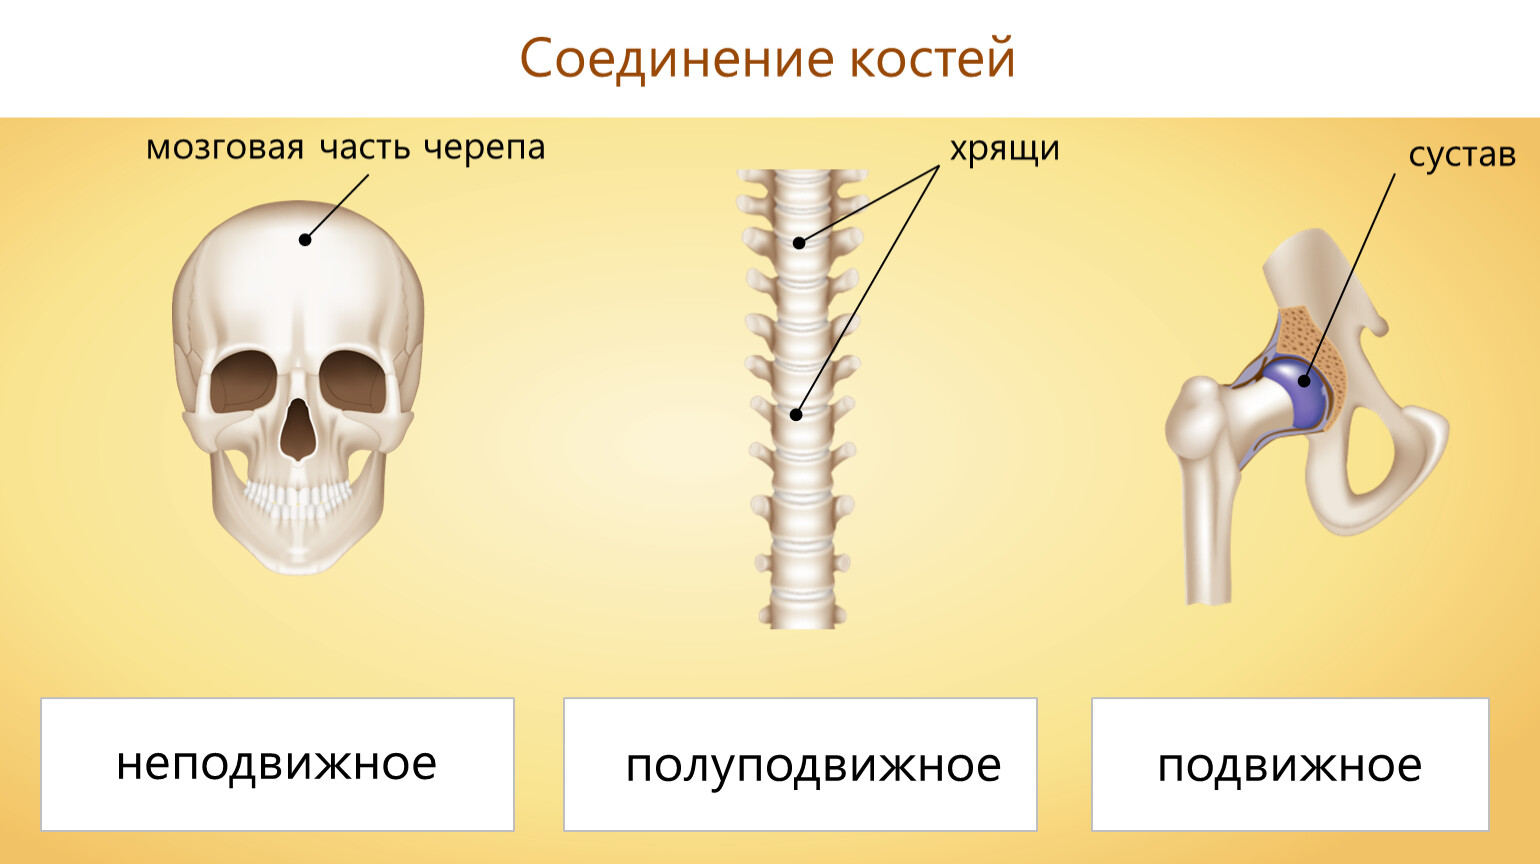 Кости полуподвижное соединение пример. Типы соединения костей неподвижное и полуподвижное. Подвижные соединения костей скелета. Соединение костей неподвижные полуподвижные. Соединения костей подвижные и неподвижные полуподвижные таблица.